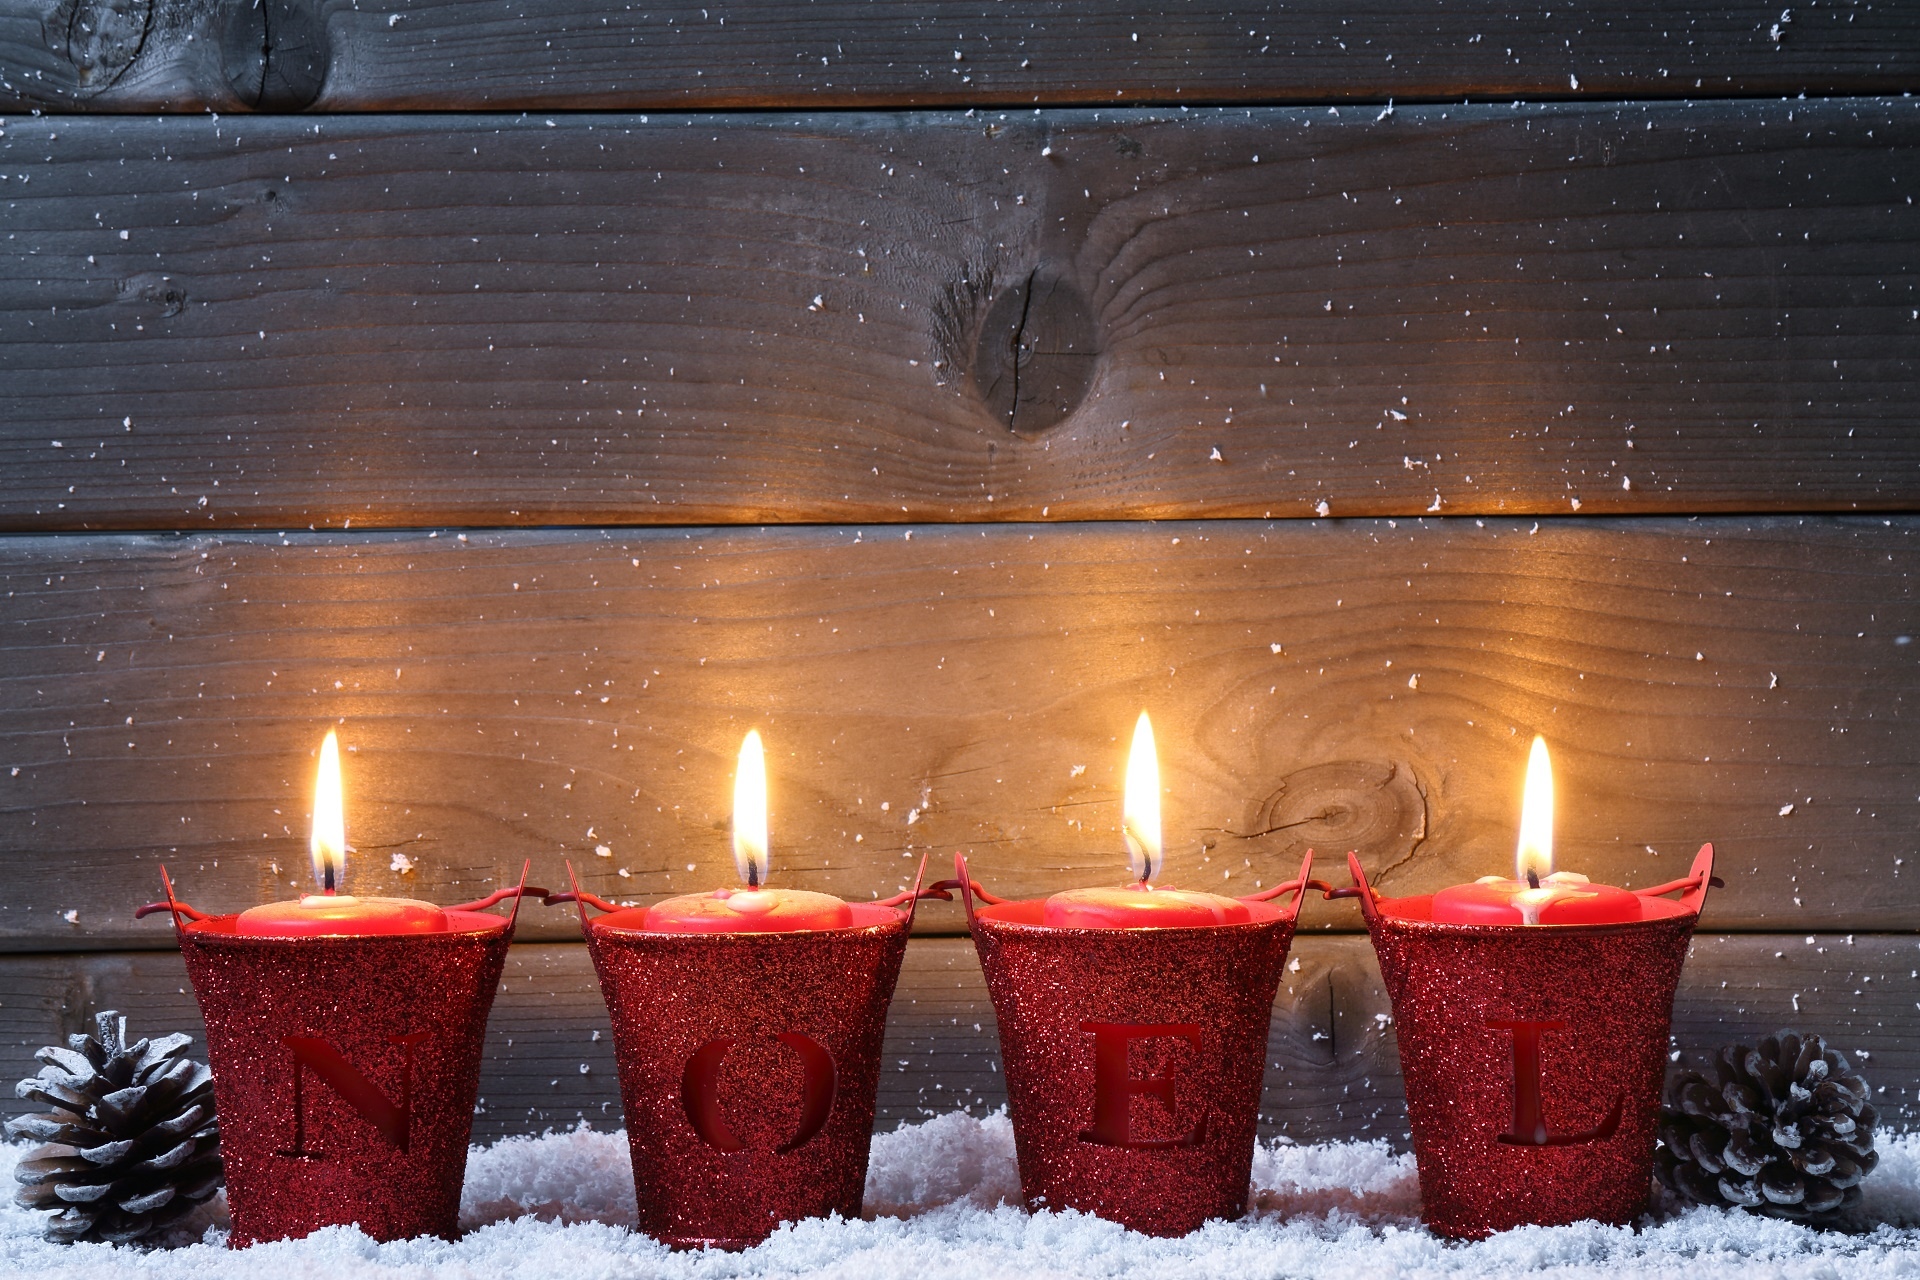 Hình ảnh những ngọn nến lung linh trong đêm Giáng sinh tuyệt đẹp - Ảnh 2